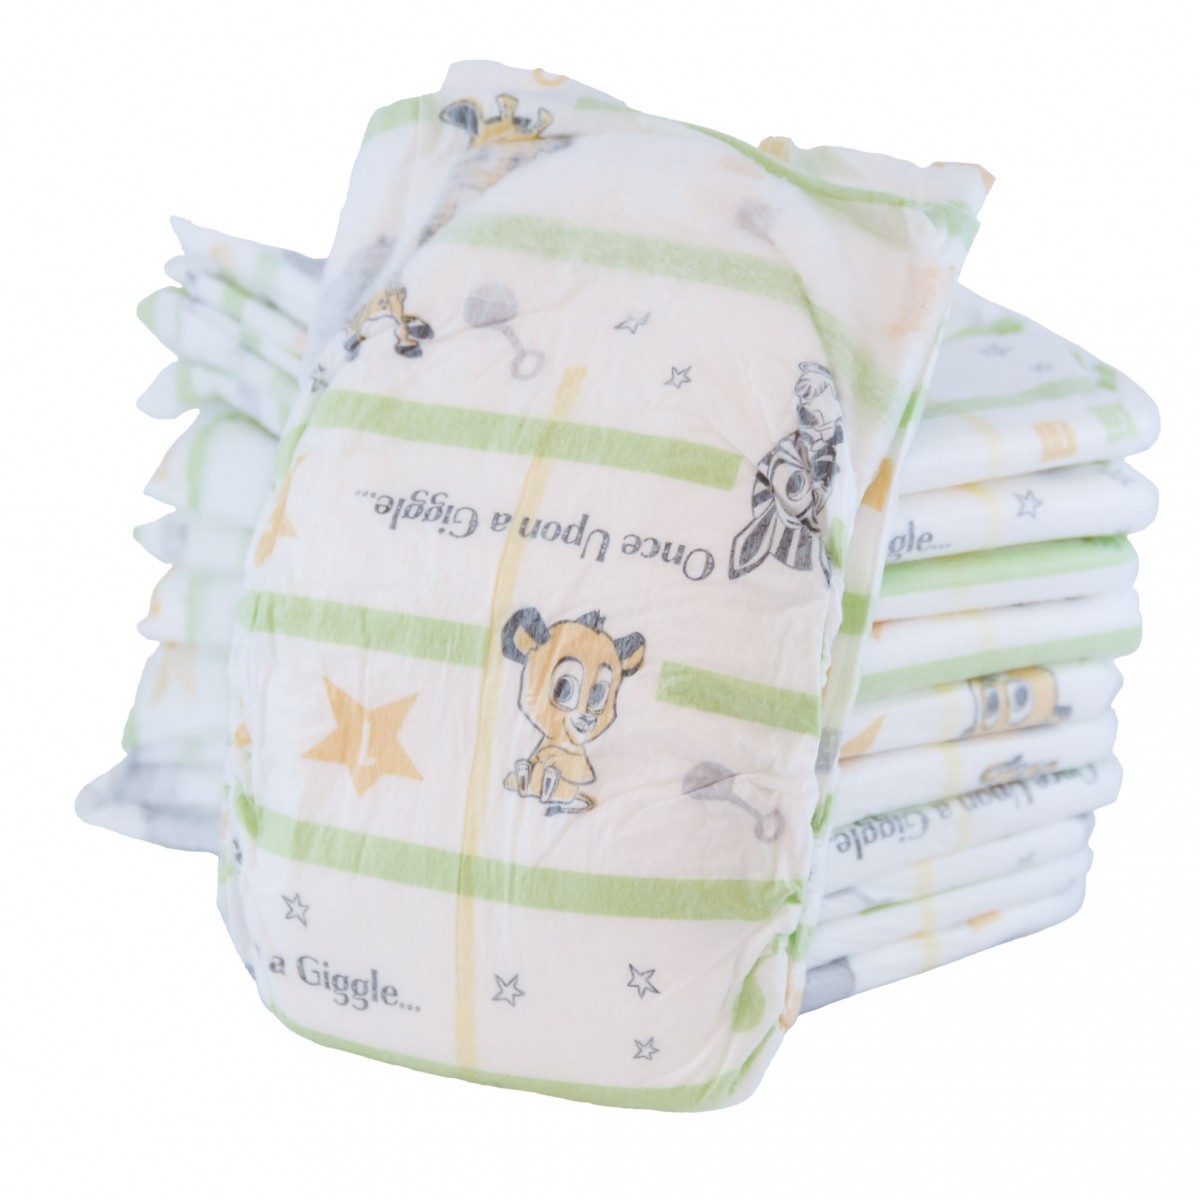 walmart parent's choice disposable diaper review